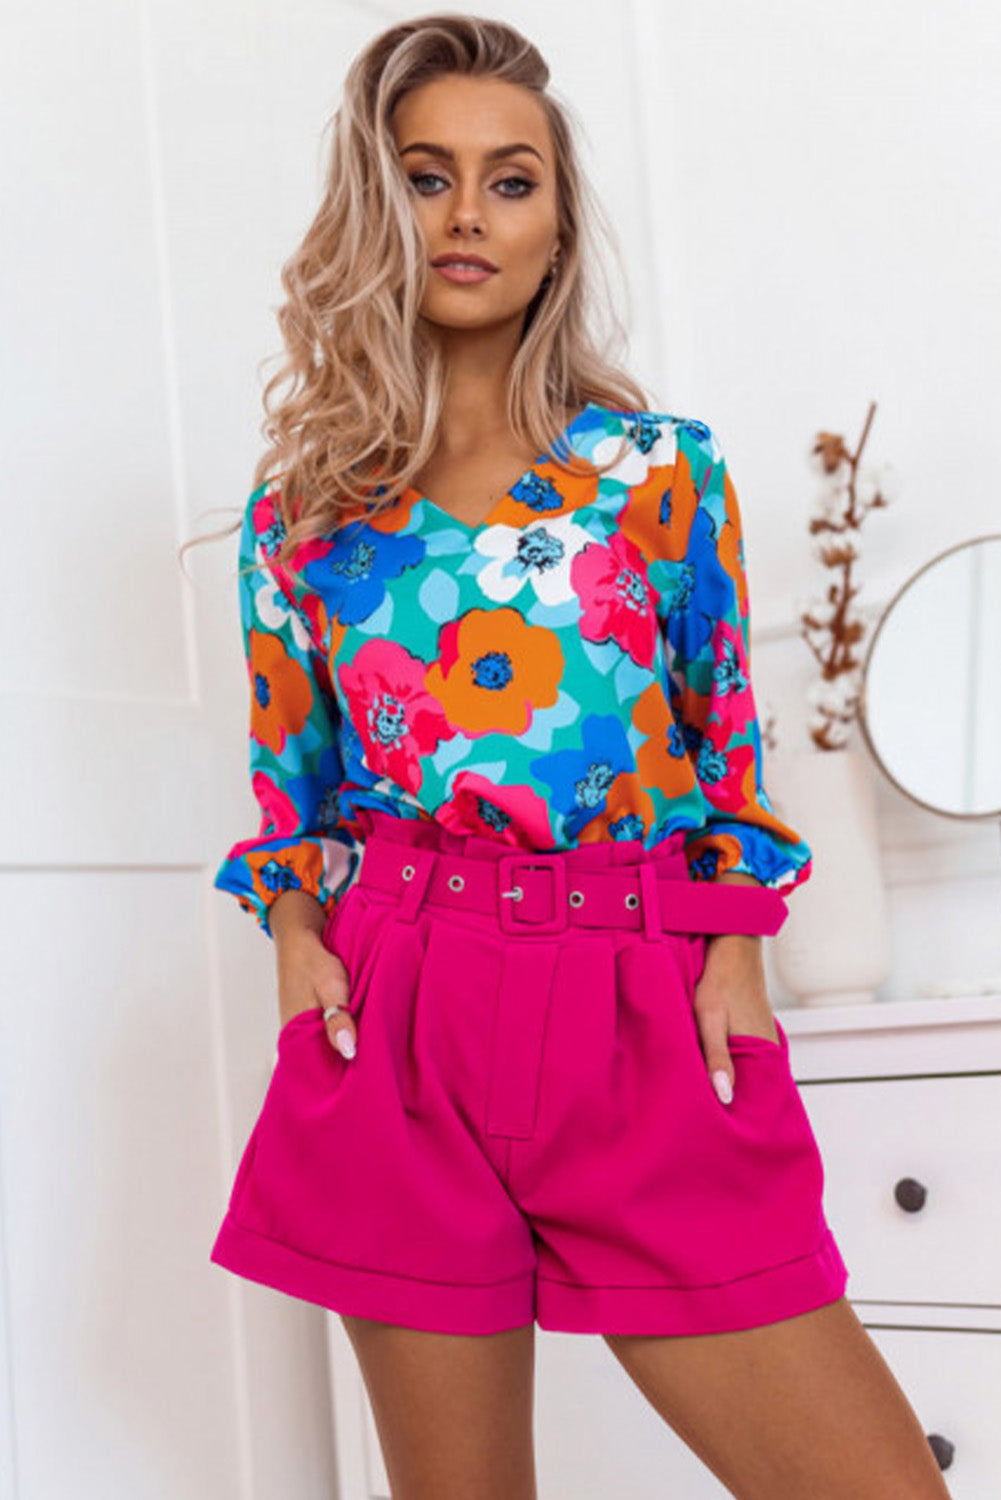 Rosafarbene, mehrfarbige Bluse mit Blumenmuster und V-Ausschnitt und 3/4-Ärmeln